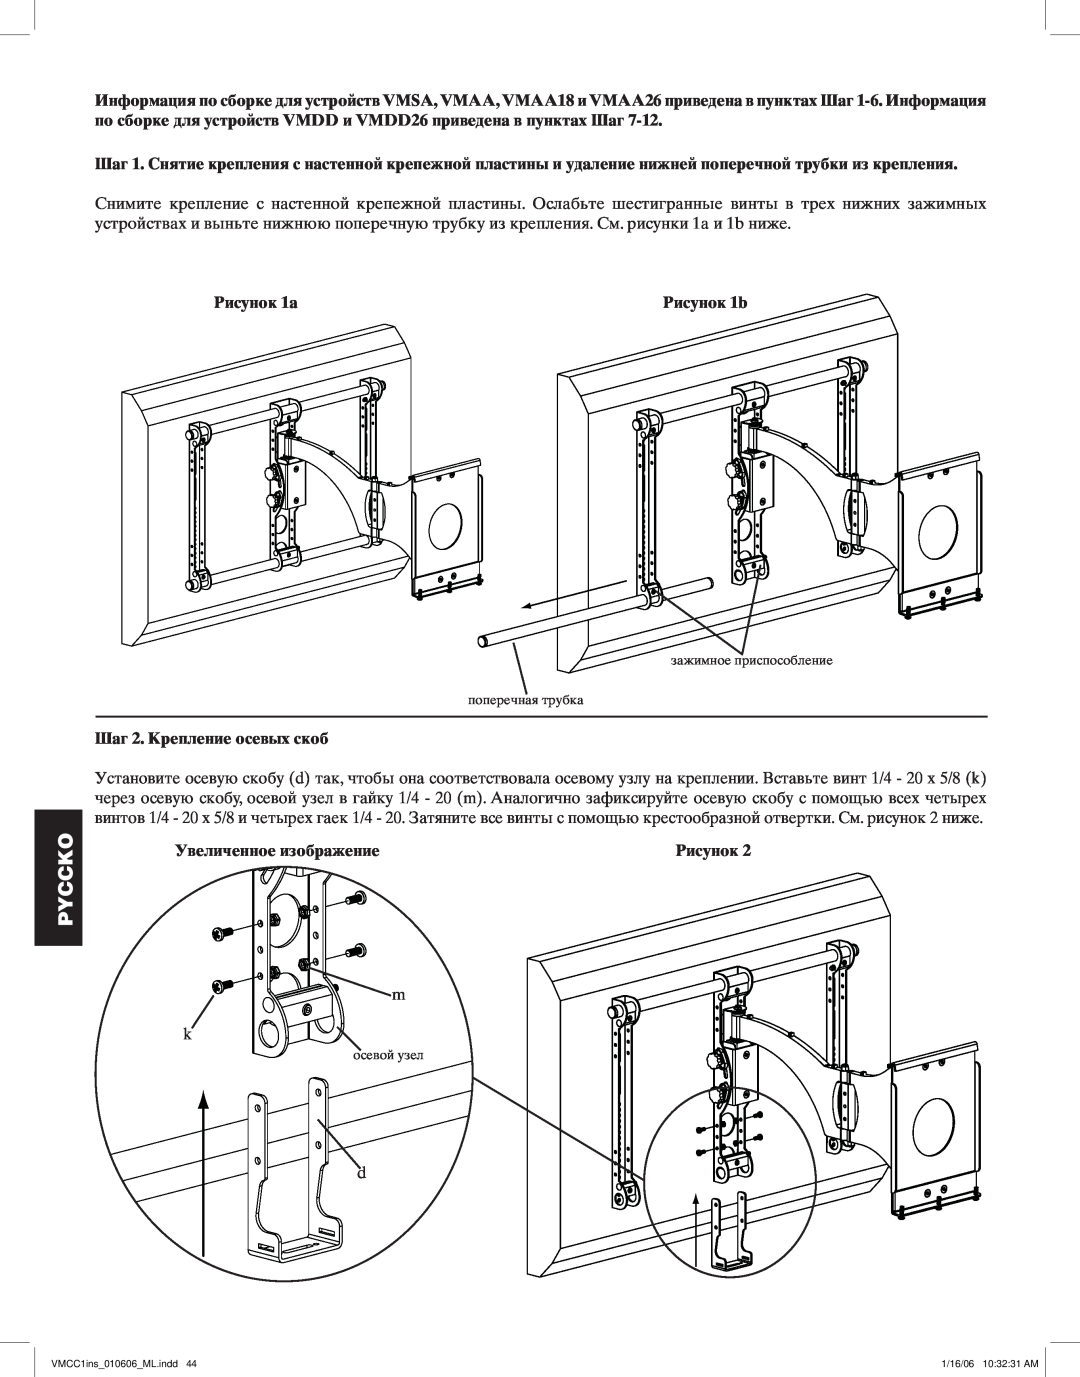 Sanus Systems VMCC1 manual Рисунок 1а, Шаг 2. Крепление осевых скоб, Увеличенное изображение, Pyccko 